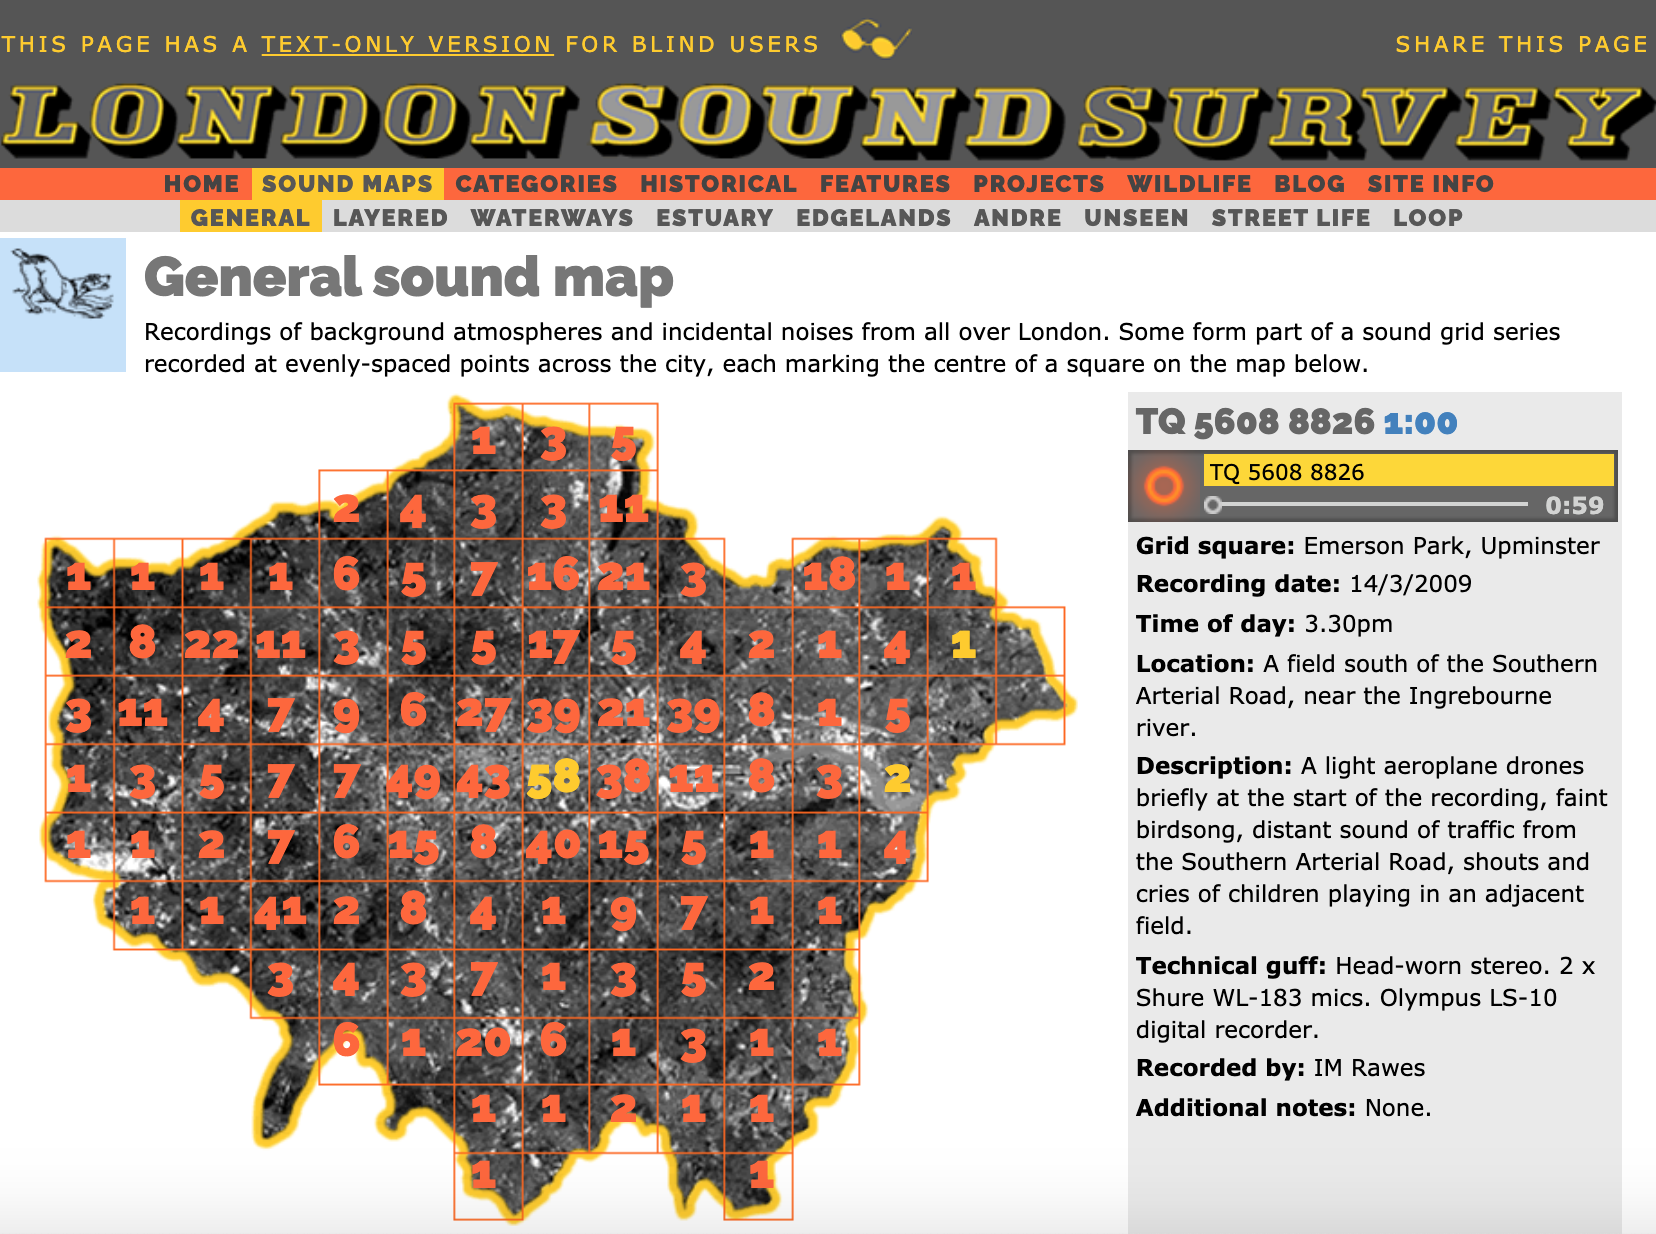 “伦敦声音调查”网站上的“声音地图”页面，每个小方块里的数字表示该地块上的录音数量。 网站截图